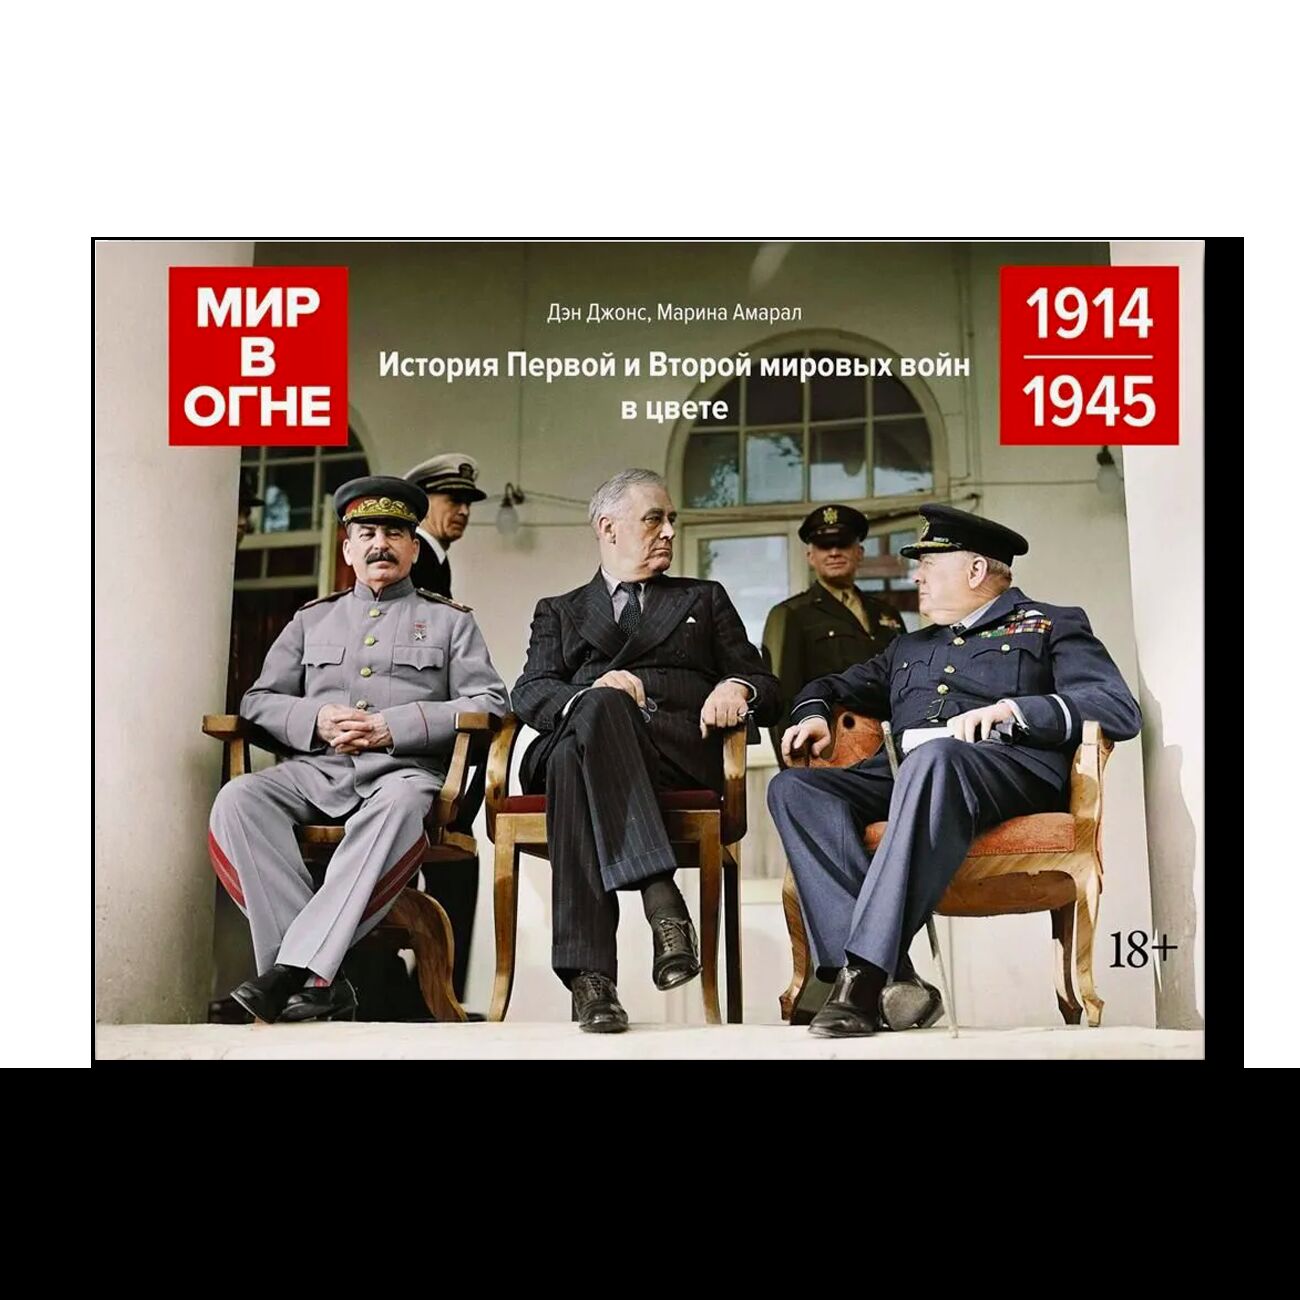 Мир в огне: 1914/1945. История Первой и Второй мировых войн в цвете